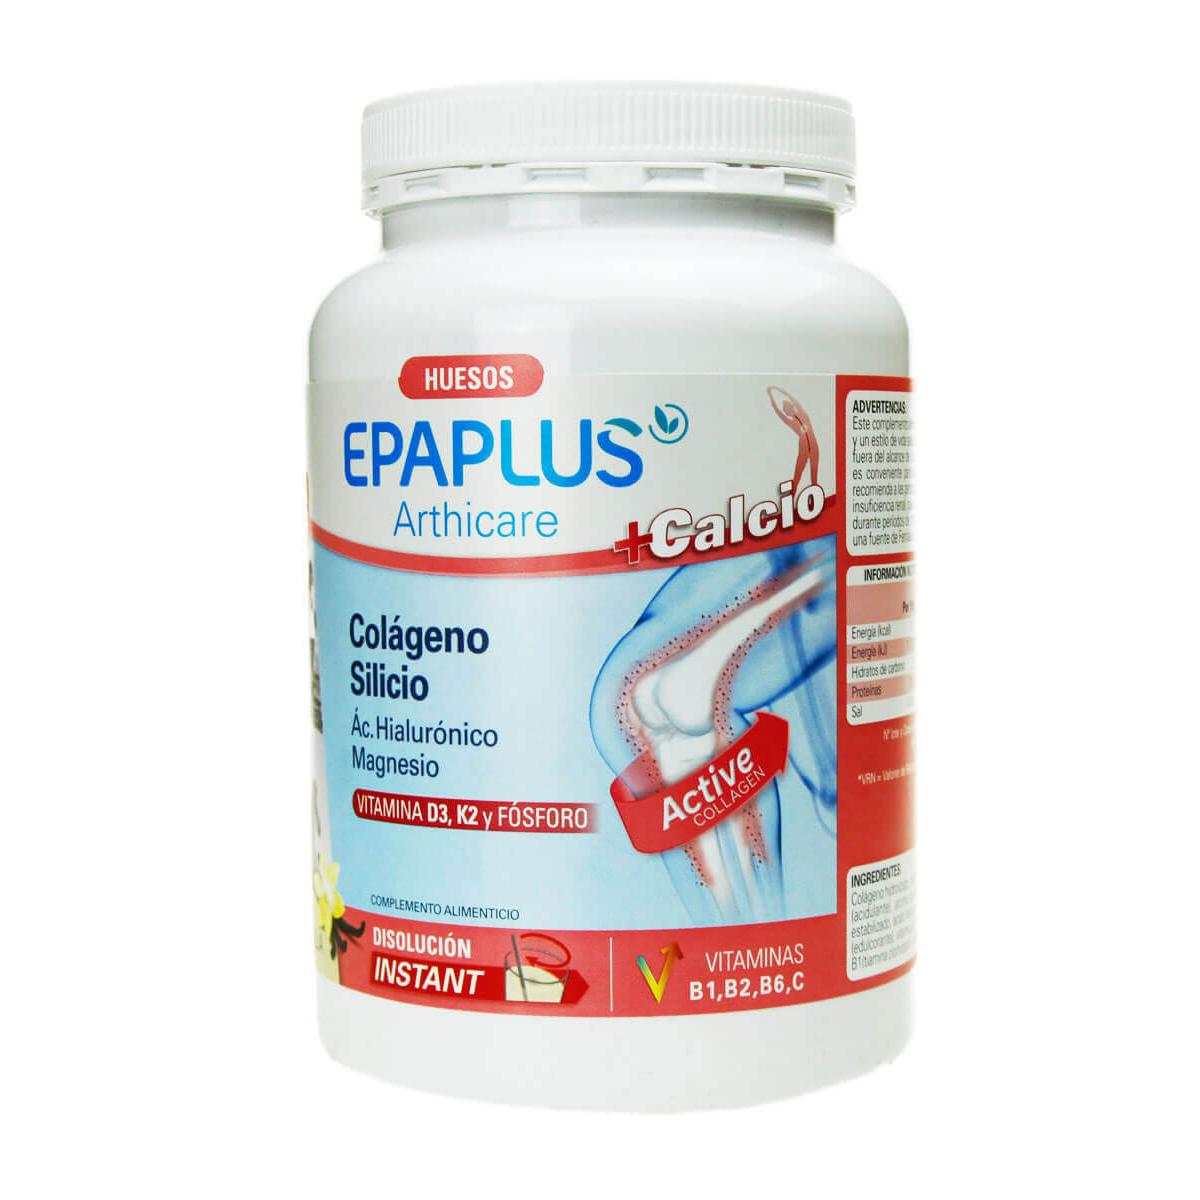 Epaplus - Epaplus arthicare +calcio + silicio sabor vainilla 383g